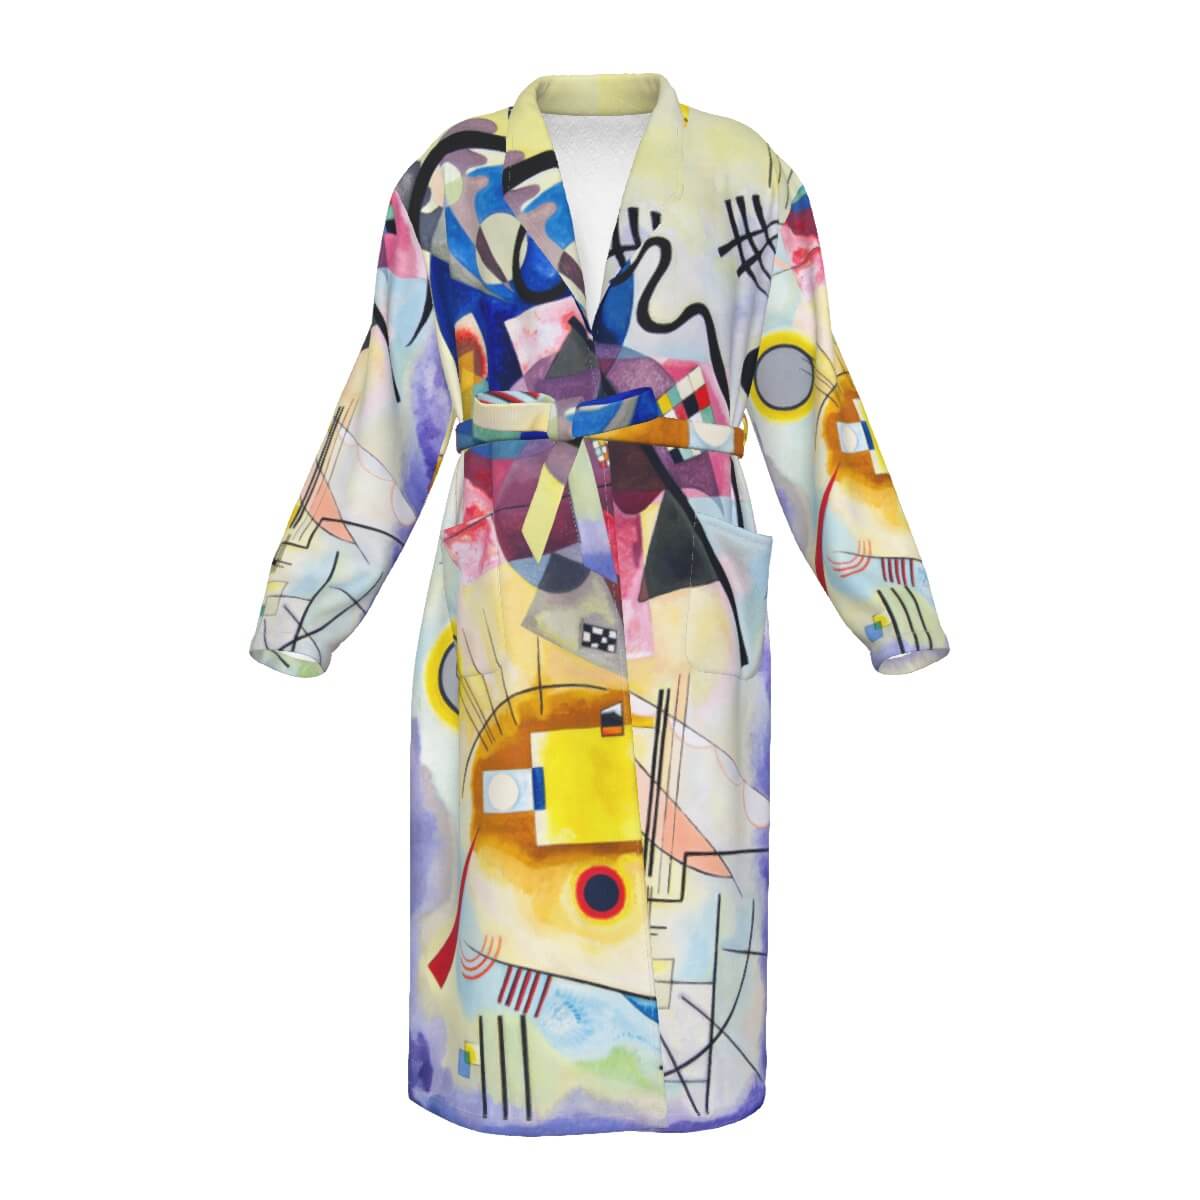 Wassily Kandinsky inspired men's robe